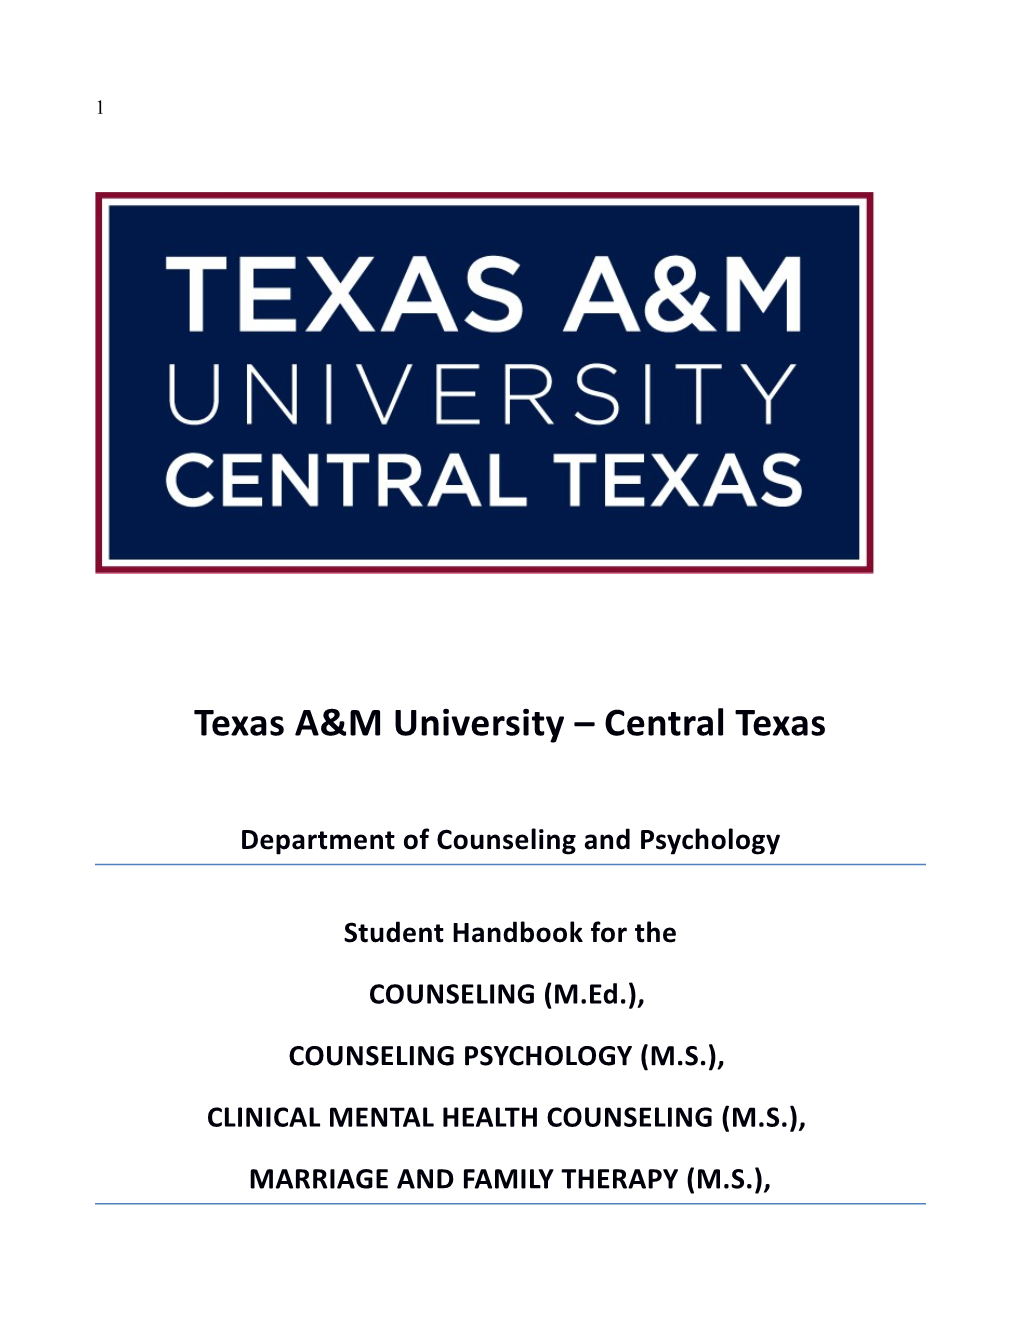 TSU Counseling, Counseling Psychology, & Educational Psychology Programs 2